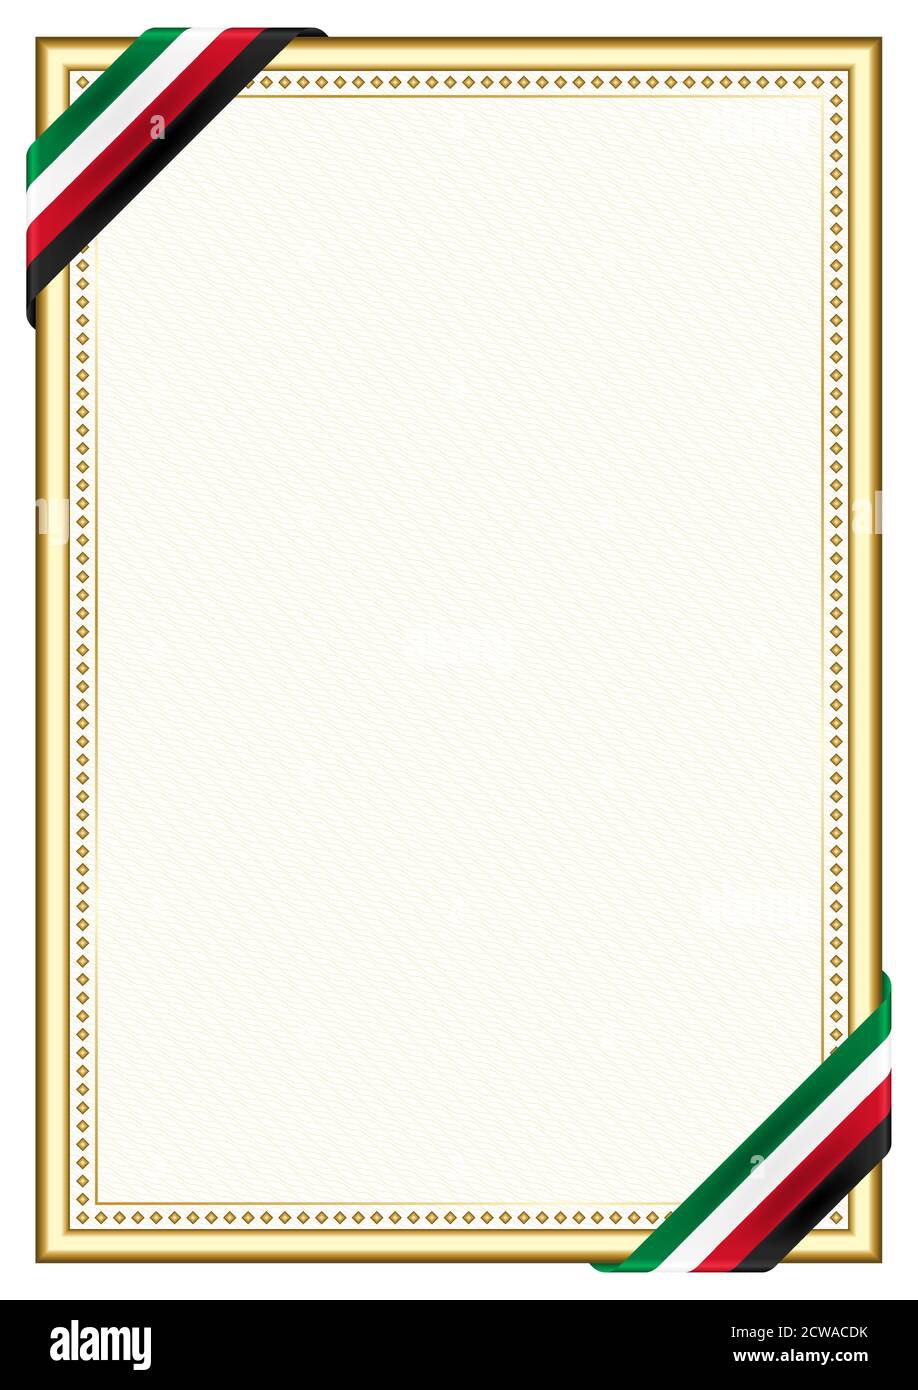 Khung cờ Kuwait với những họa tiết cầu kỳ, đậm tính chất văn hóa của quốc gia này sẽ khiến bạn thấy cảm giác gần gũi và quen thuộc hơn. Nó là biểu tượng đại diện cho sự đoàn kết, sự vững chắc và sự kiên định của người dân Kuwait. Hãy cùng nhìn ngắm khung cờ của quốc gia này và cảm nhận sự đẹp mỹ của nó.